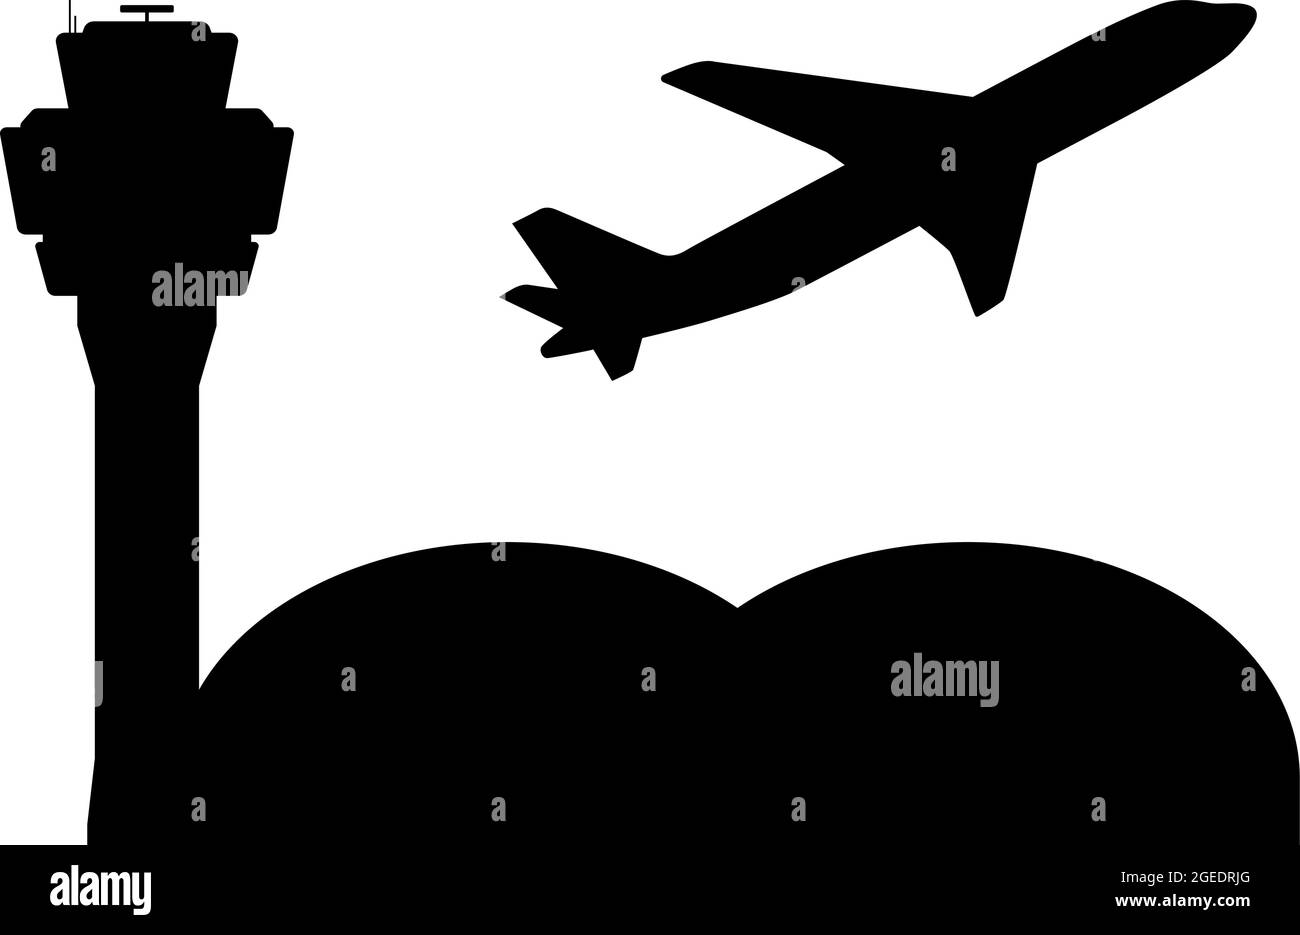 symbole aéroport avec tour de contrôle de la circulation aérienne et décollage d'avion, illustration vectorielle Illustration de Vecteur